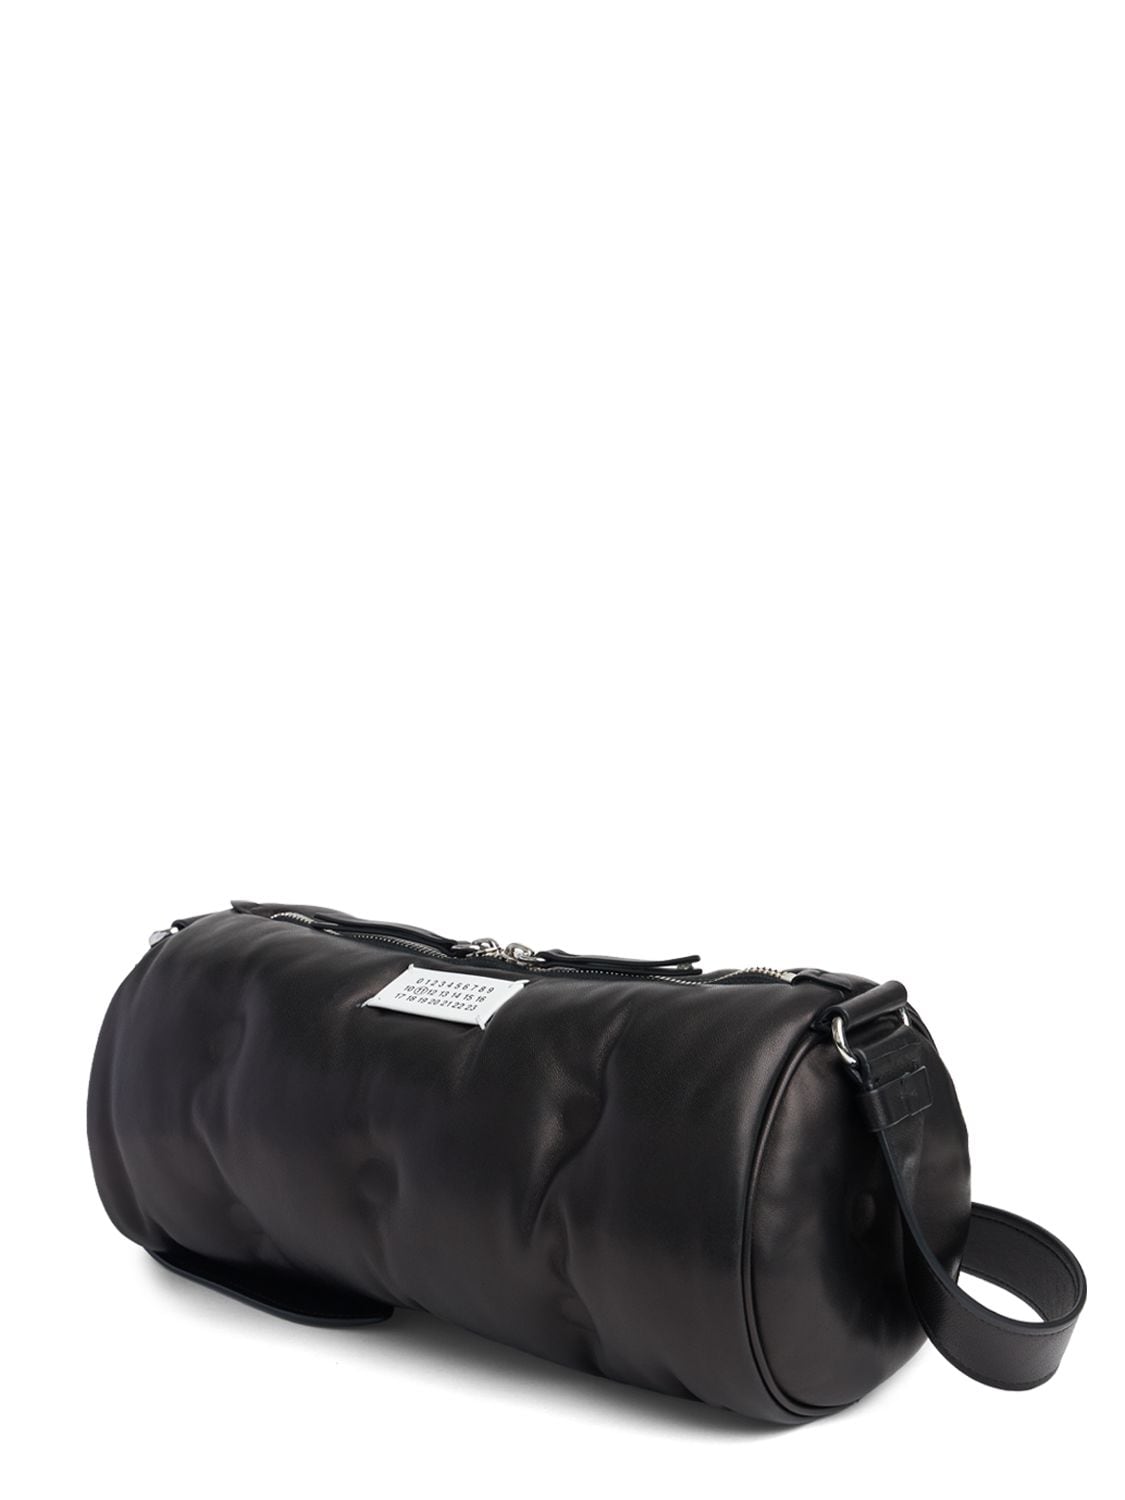 Shop Maison Margiela Glam Slam Pillow Leather Shoulder Bag In Black